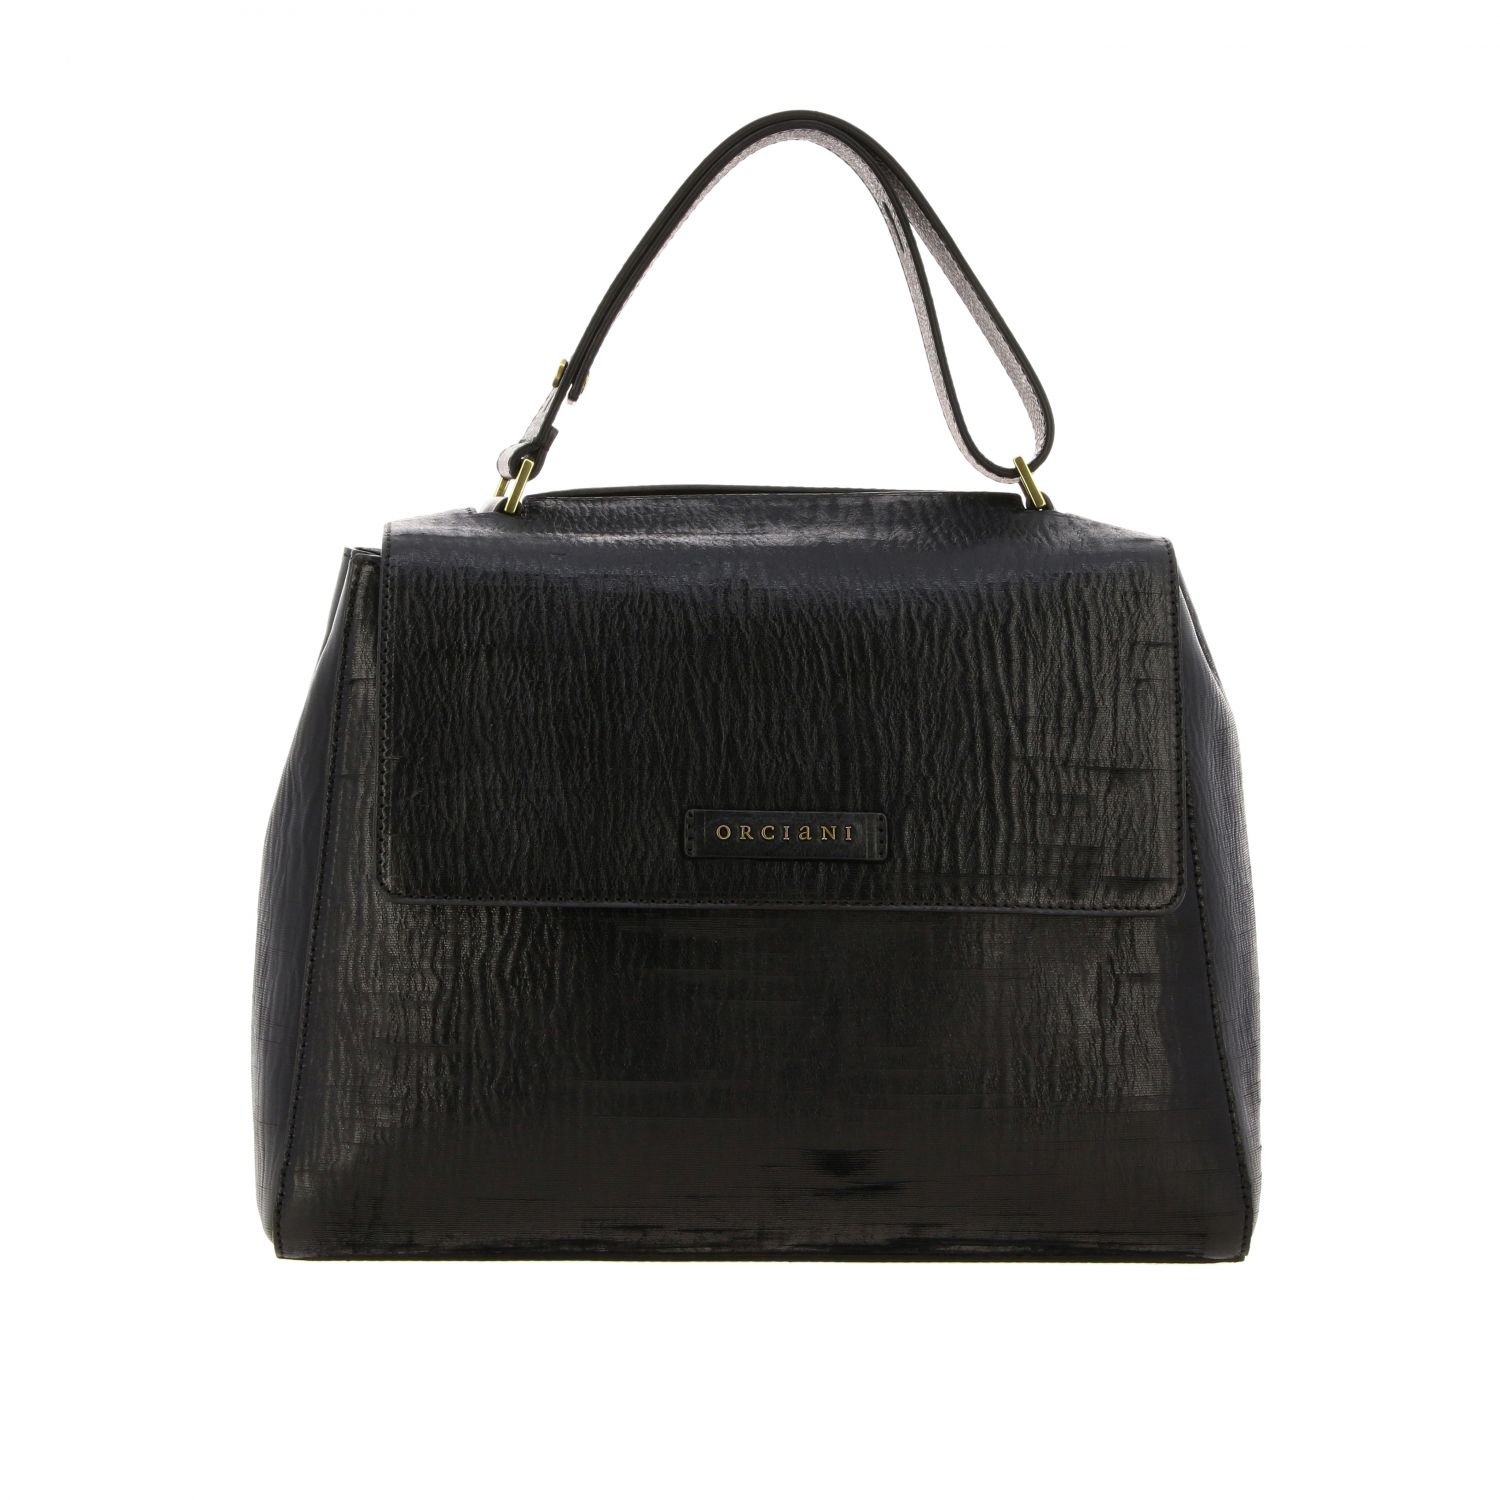 Orciani Outlet: handbag for woman - Black | Orciani handbag B02006 ...